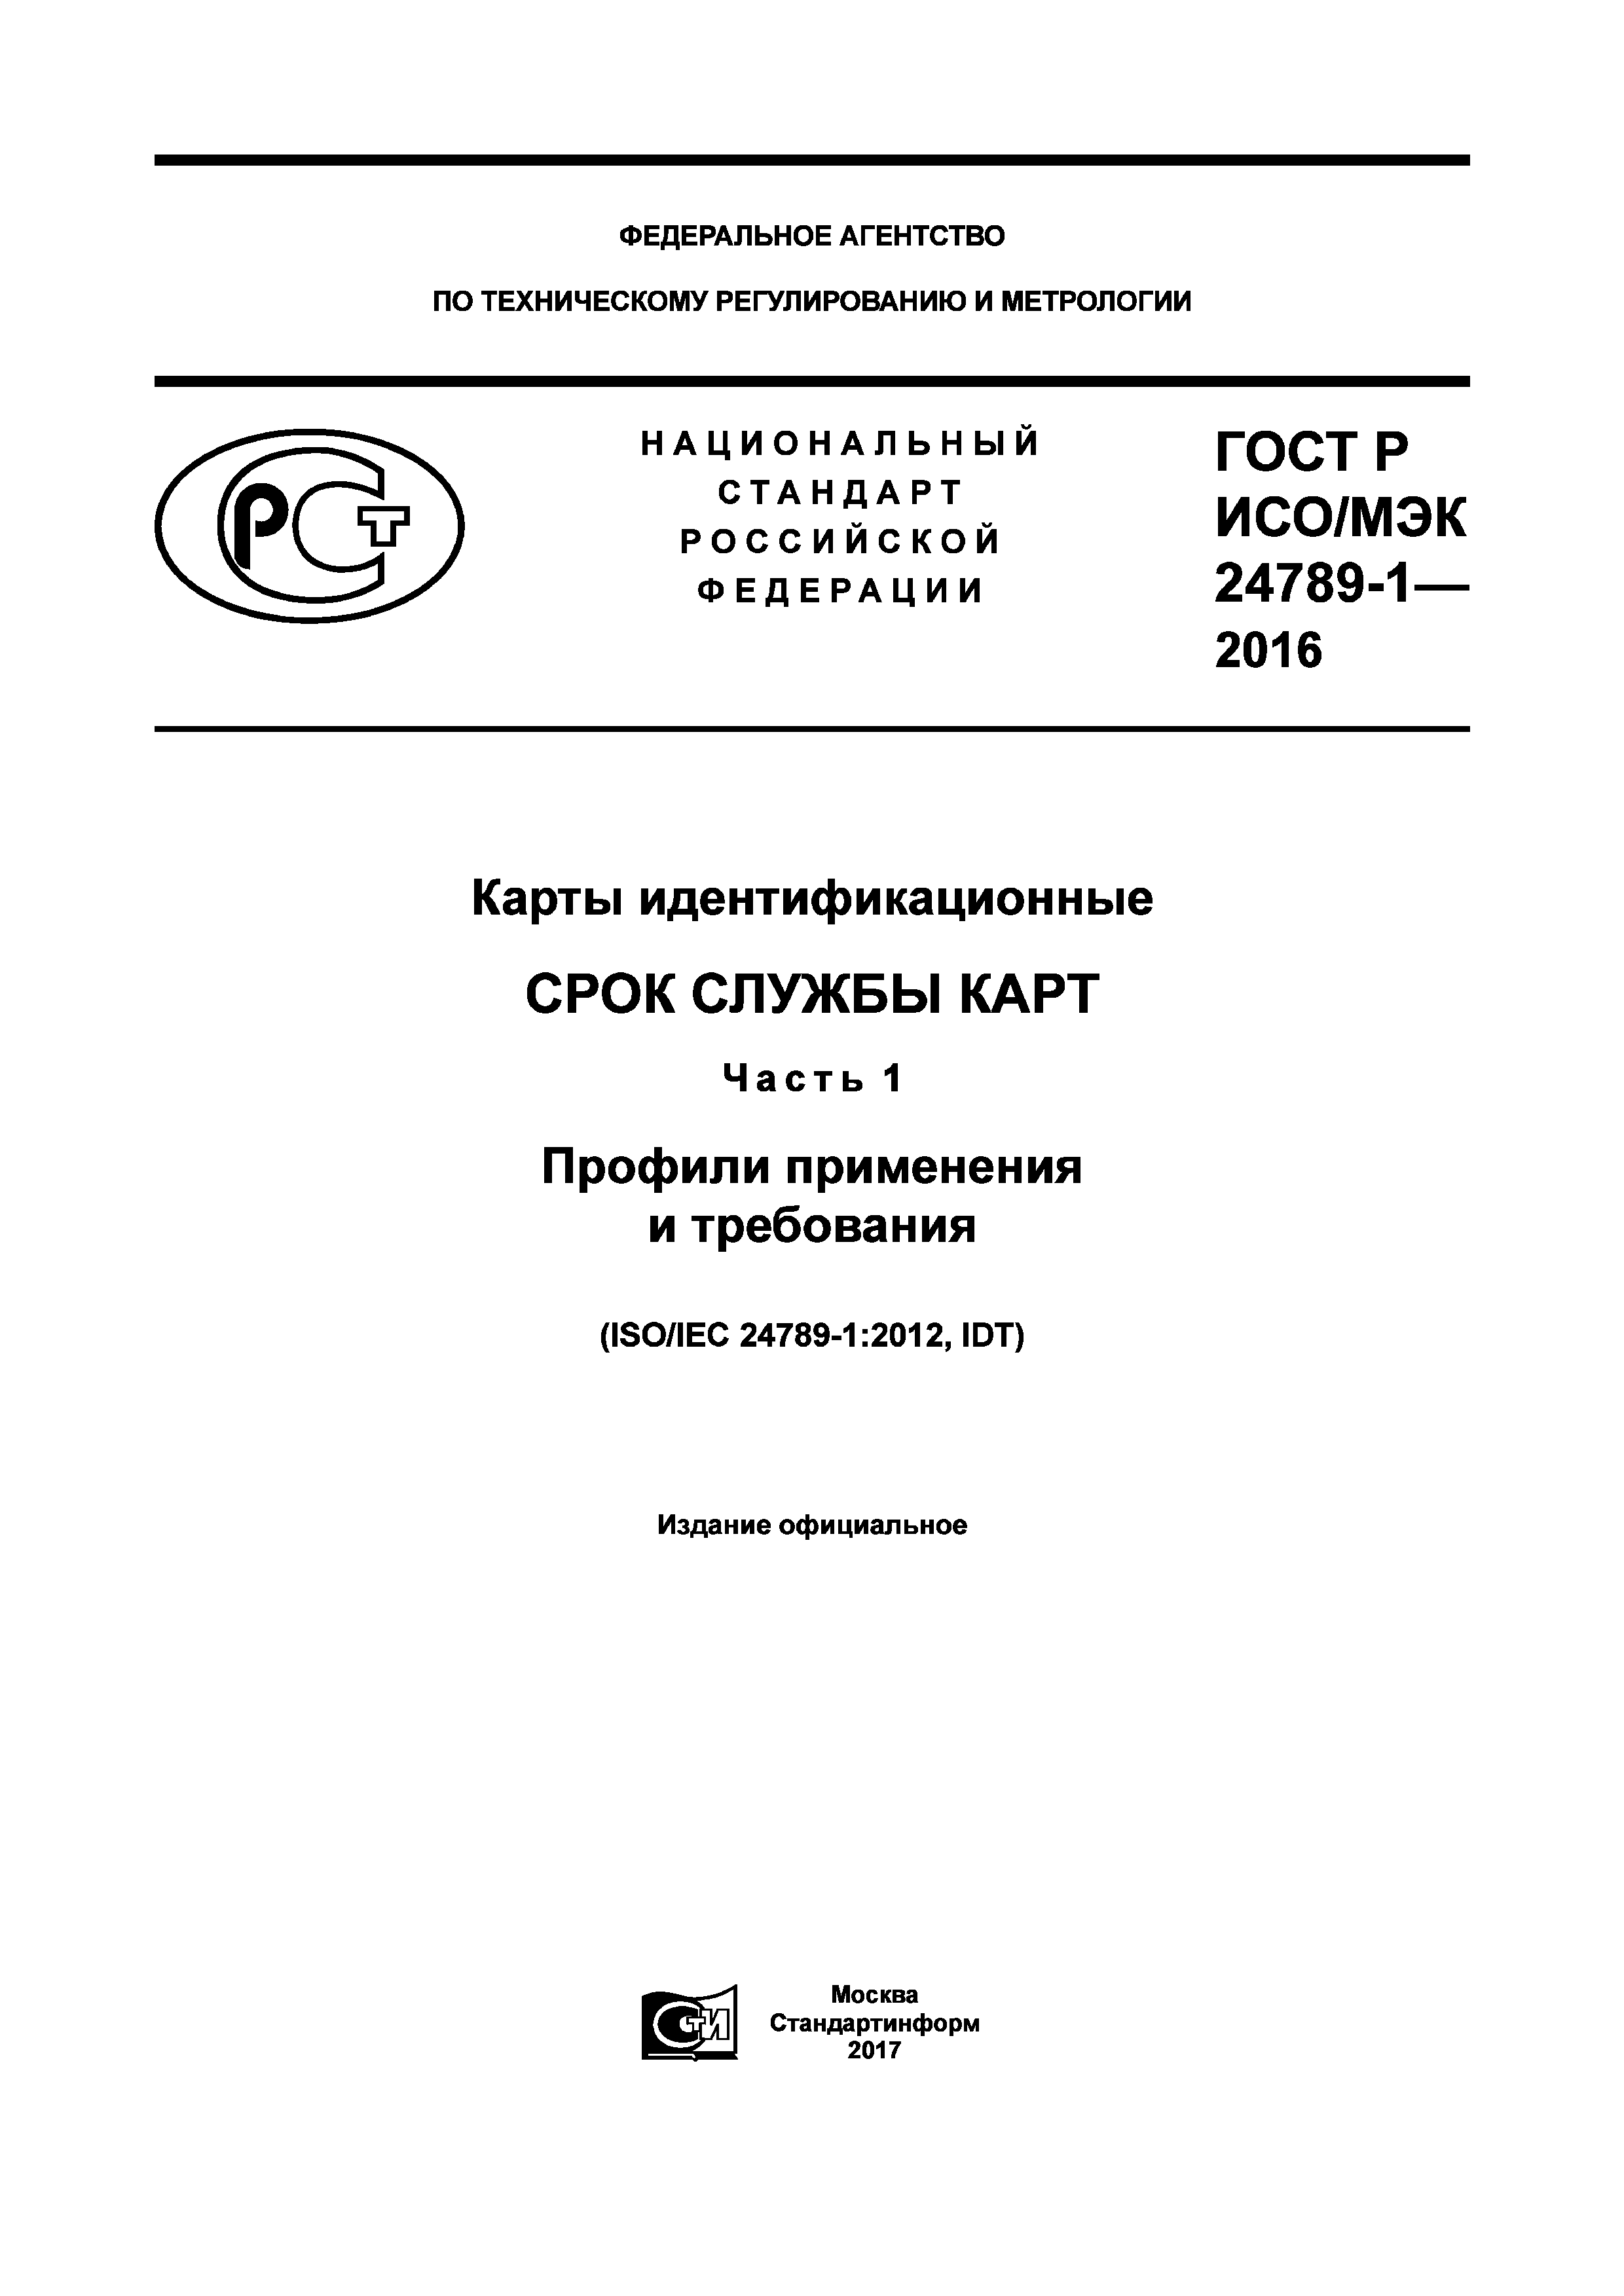 ГОСТ Р ИСО/МЭК 24789-1-2016